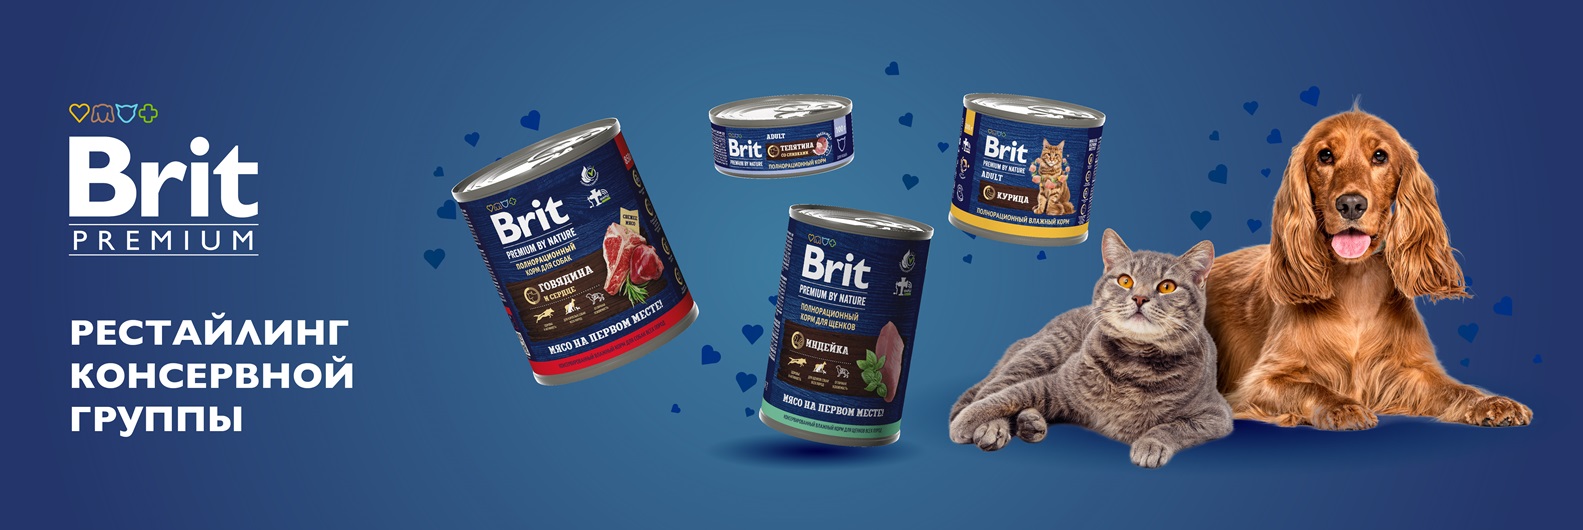 Новый дизайн упаковки на консервах Brit Premium